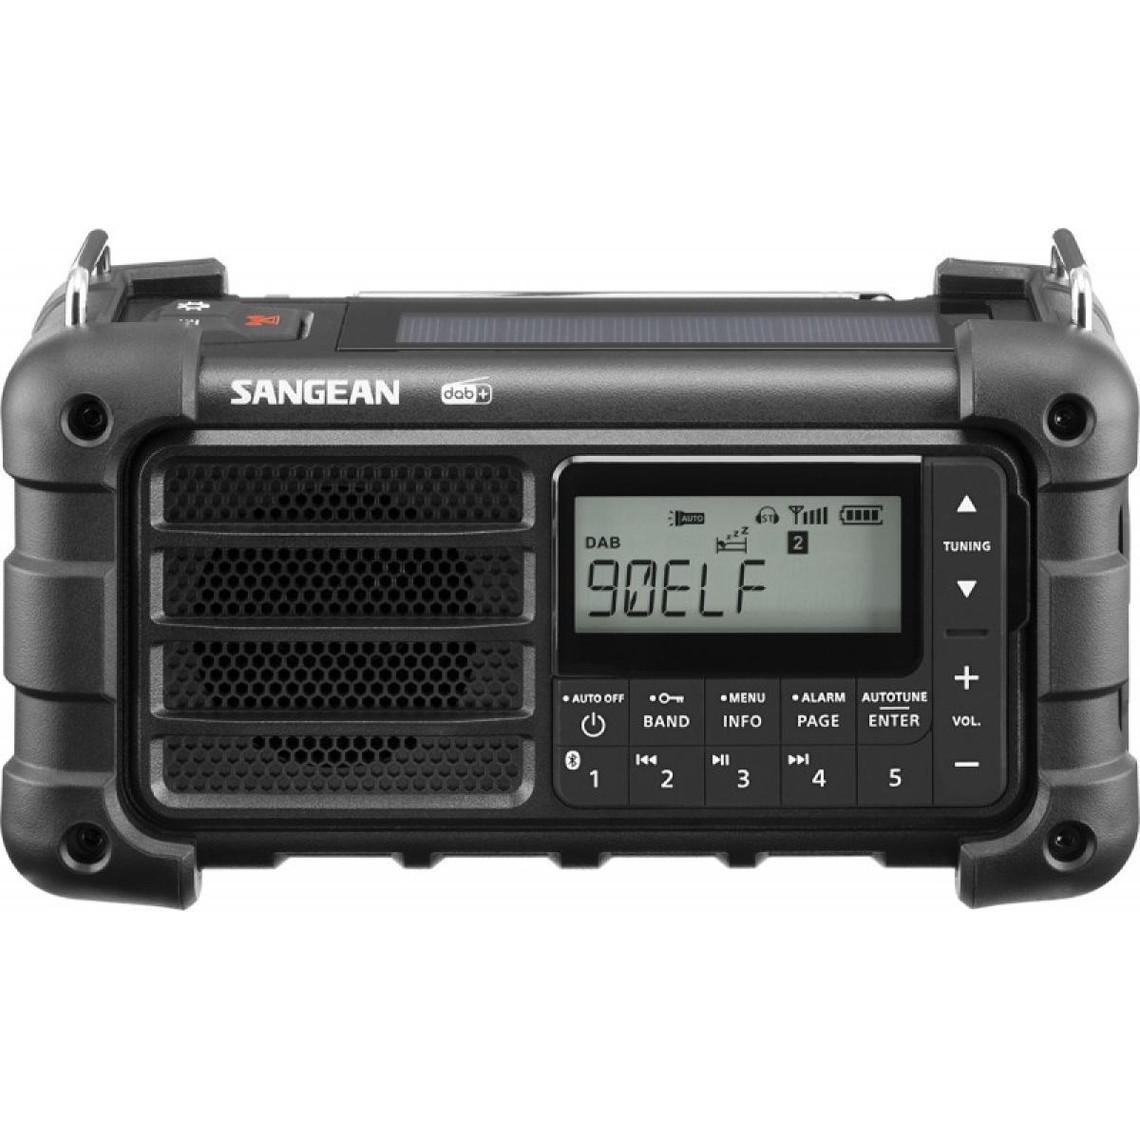 Radio Sangean SANGEAN - MMR-99DAB